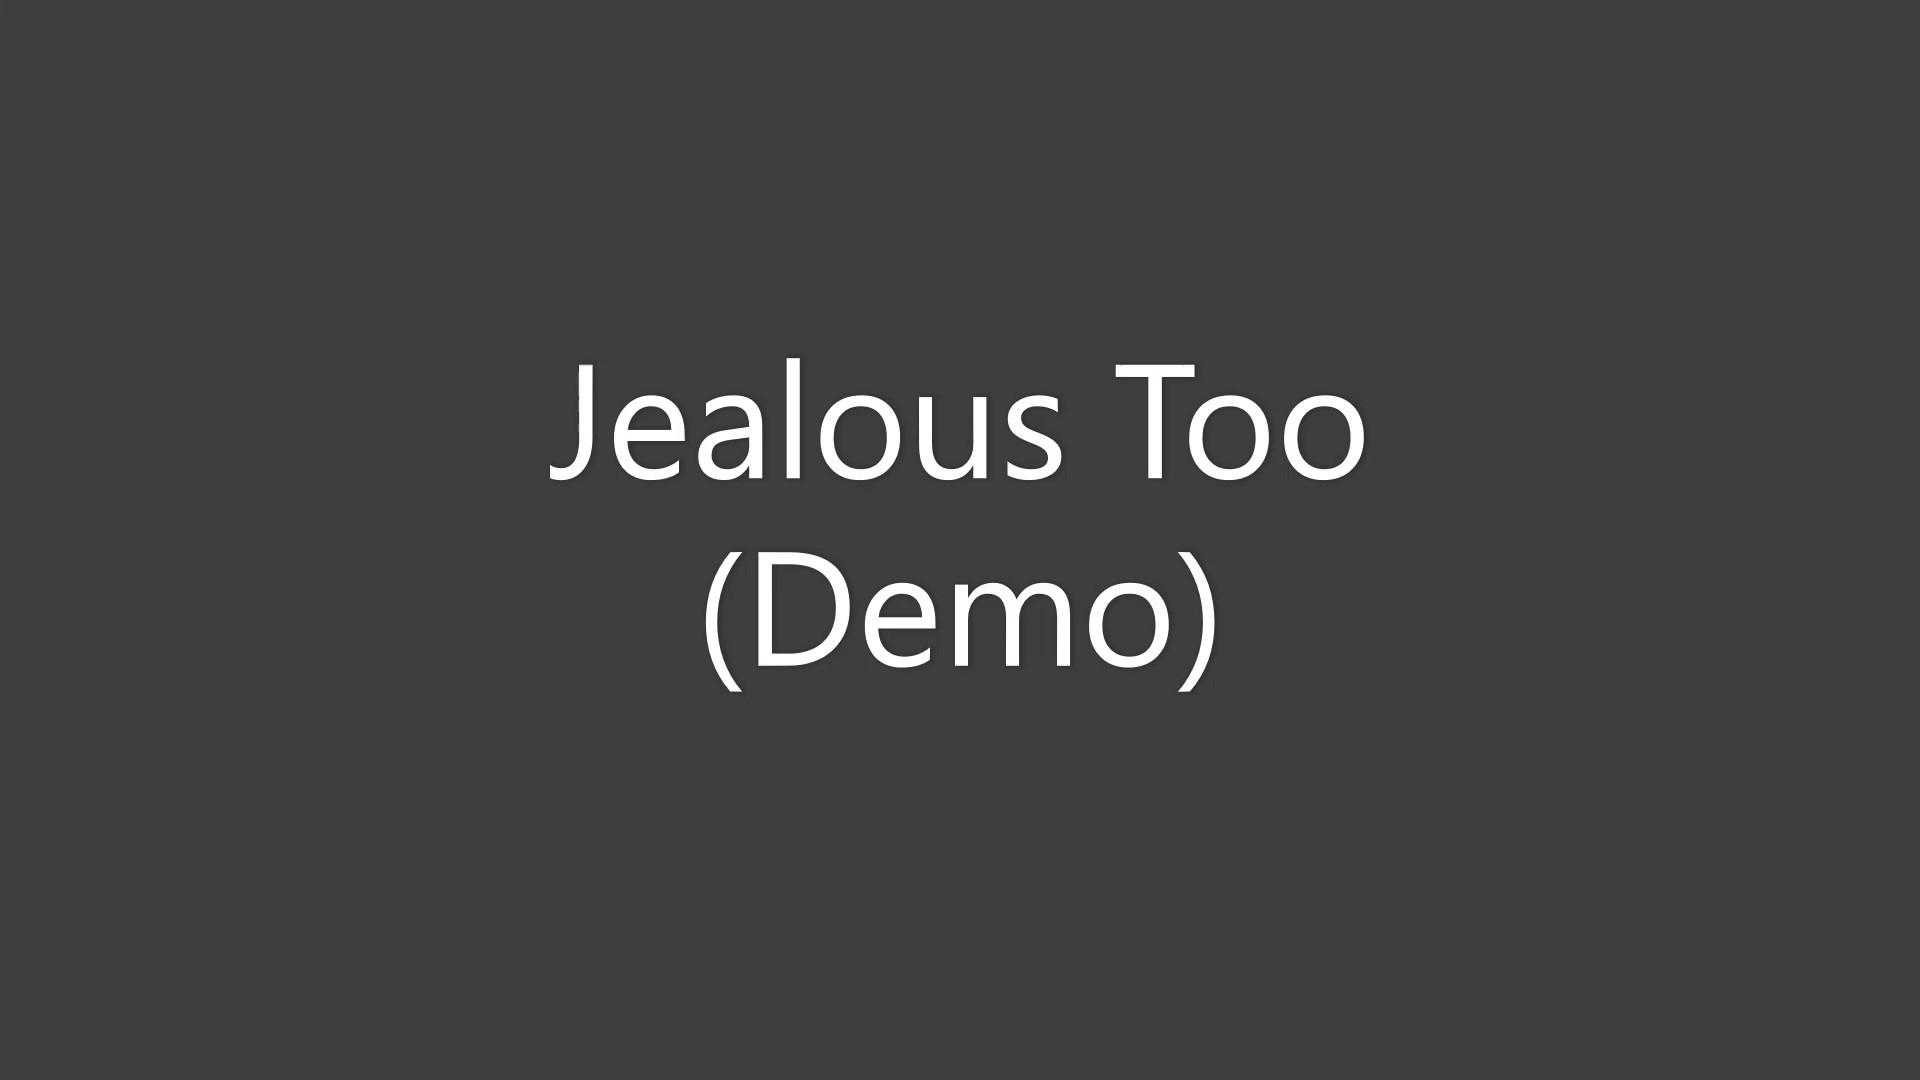 Jealous Too Demo